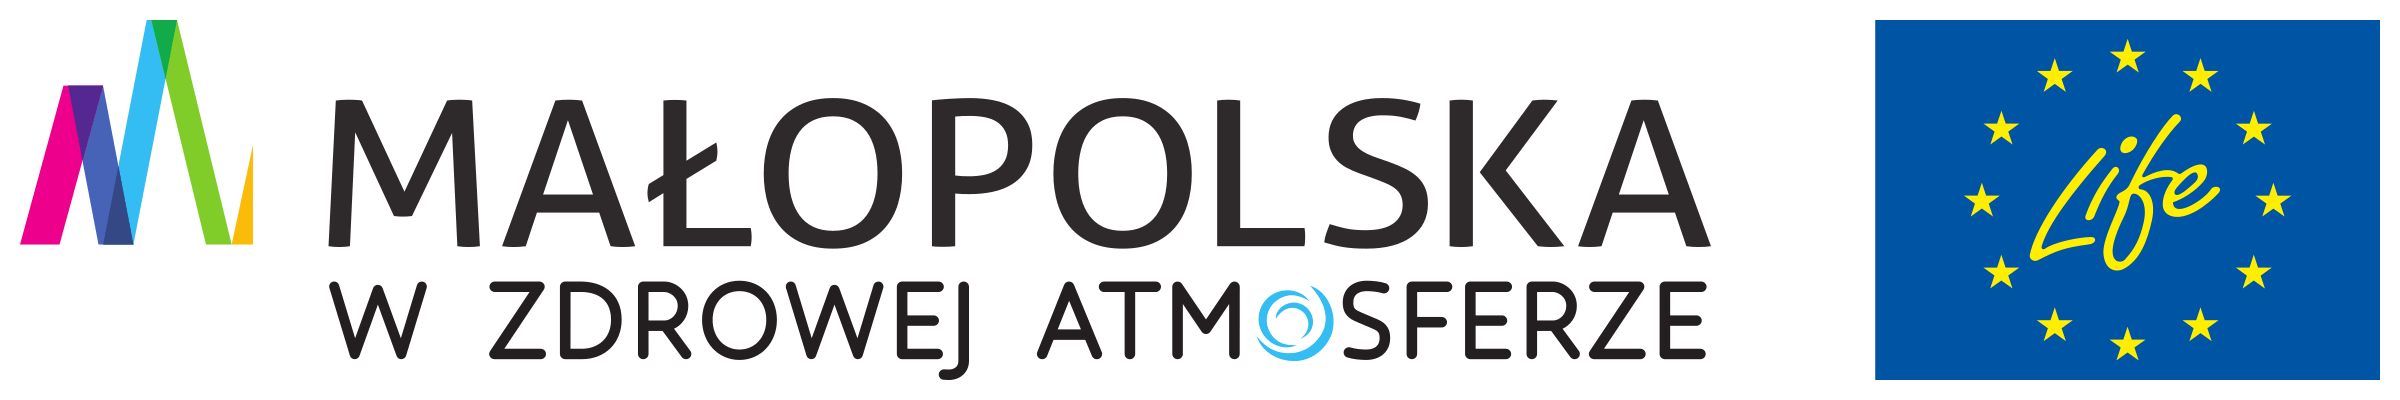 Malopolska w zdrowej Atmosferze Logo LIFE-IP_Malopolska